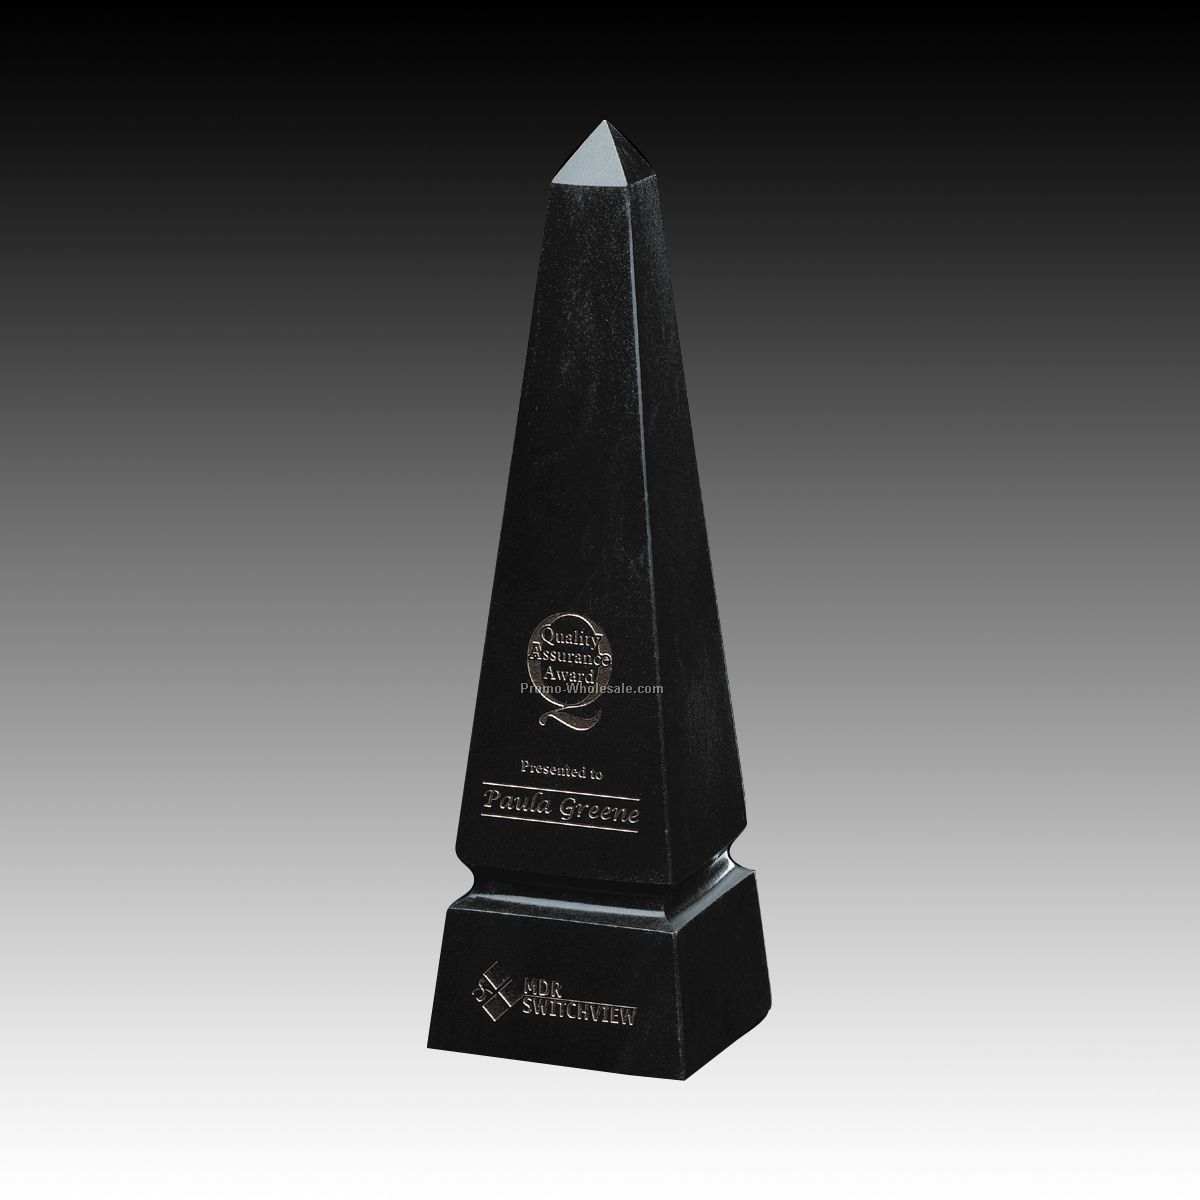 3"x10" Grooved Obelisk Award